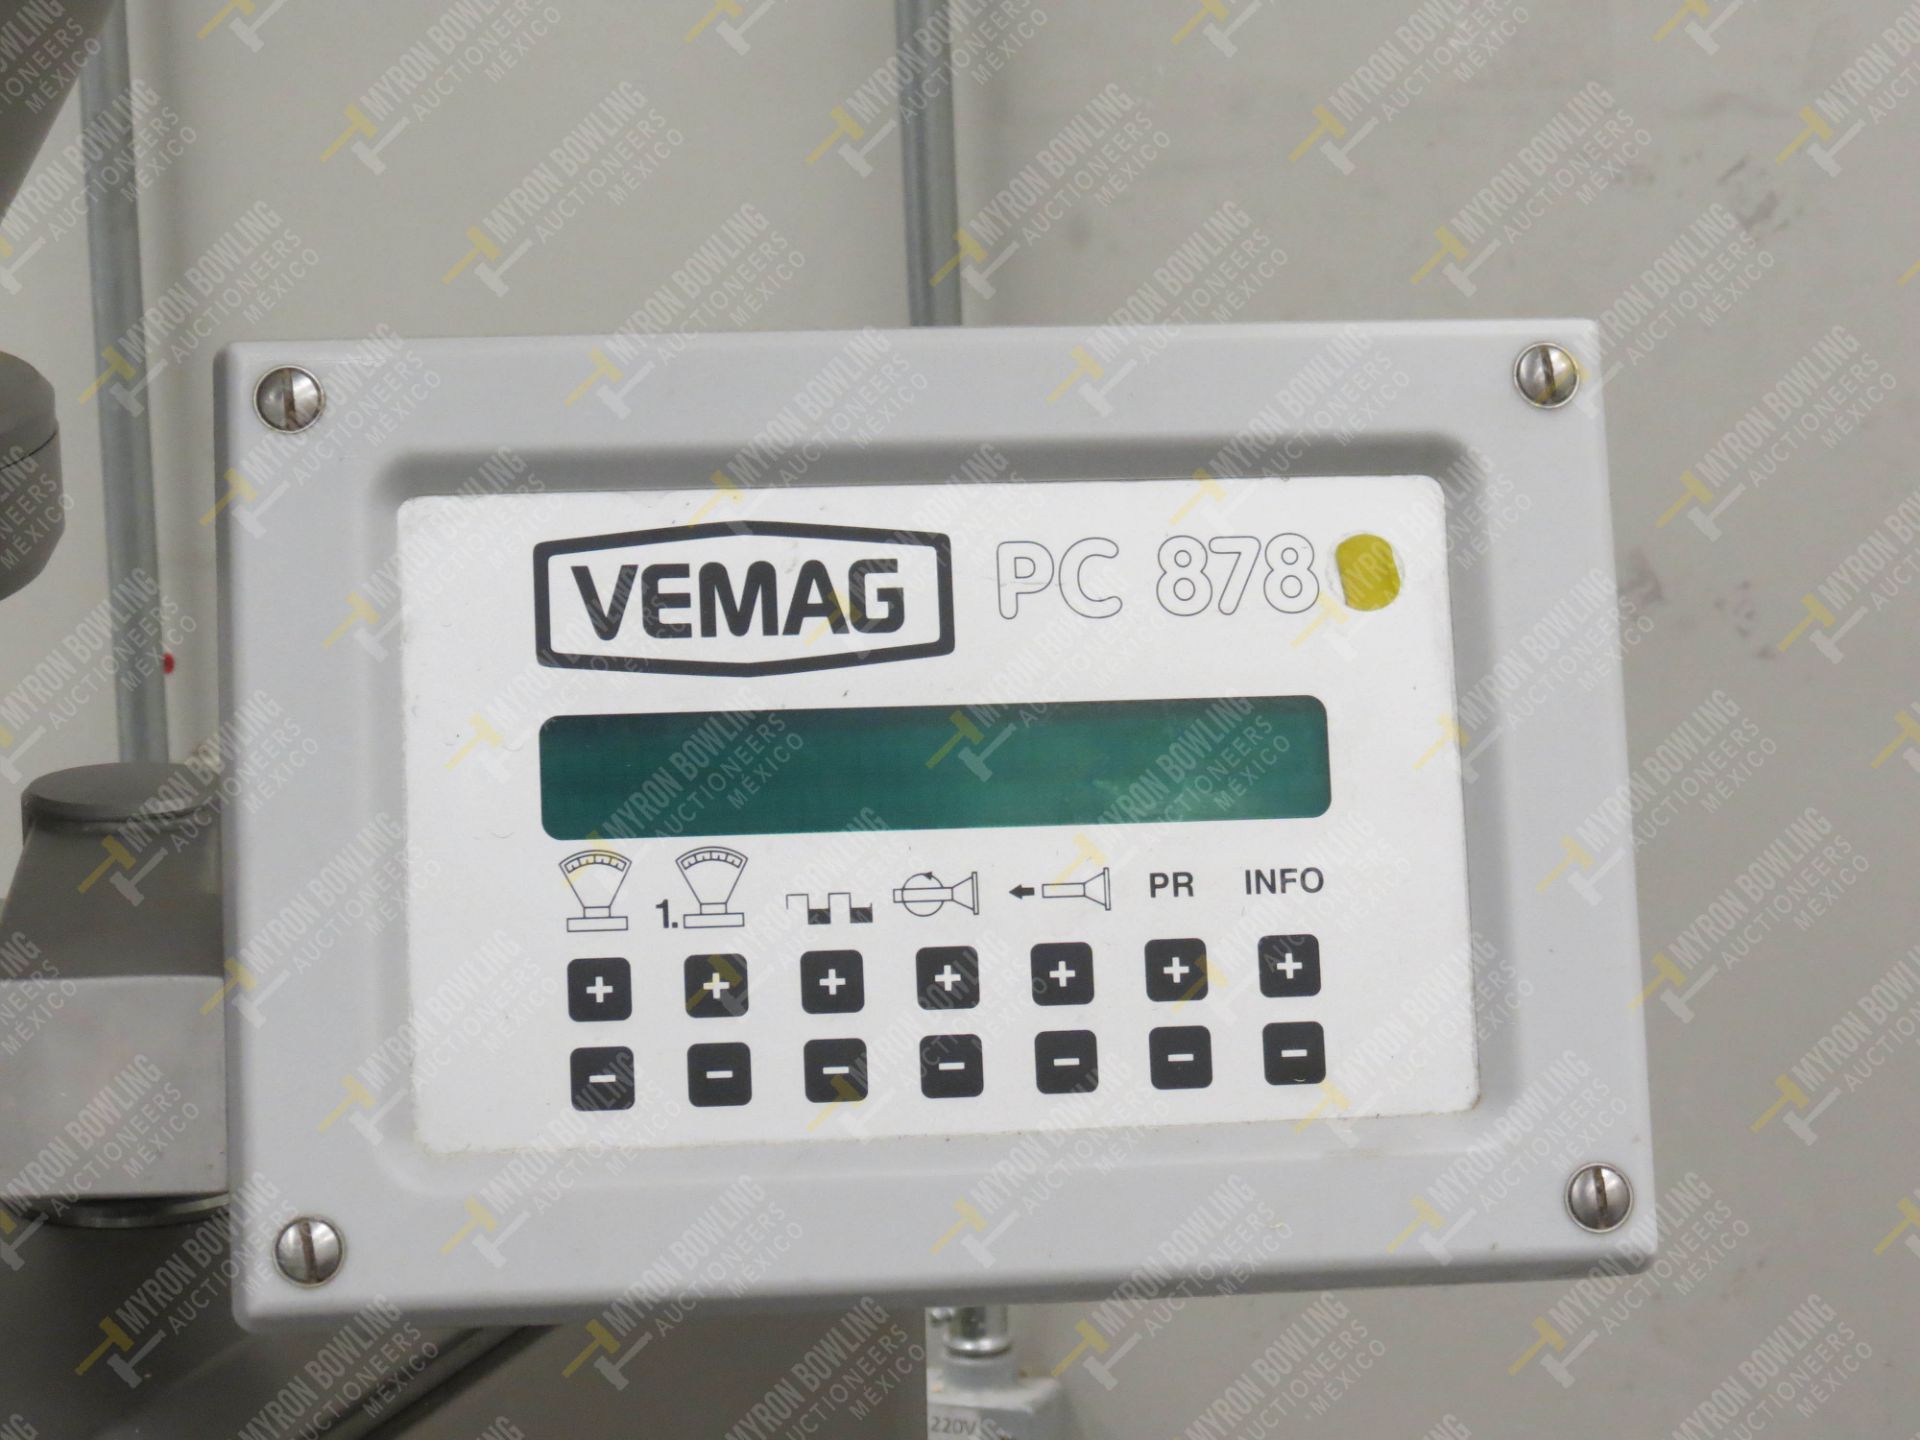 Dosificador neumático marca Vemag, Modelo Robot 500, No. de Serie 1284993, año 2016 con … - Image 6 of 11